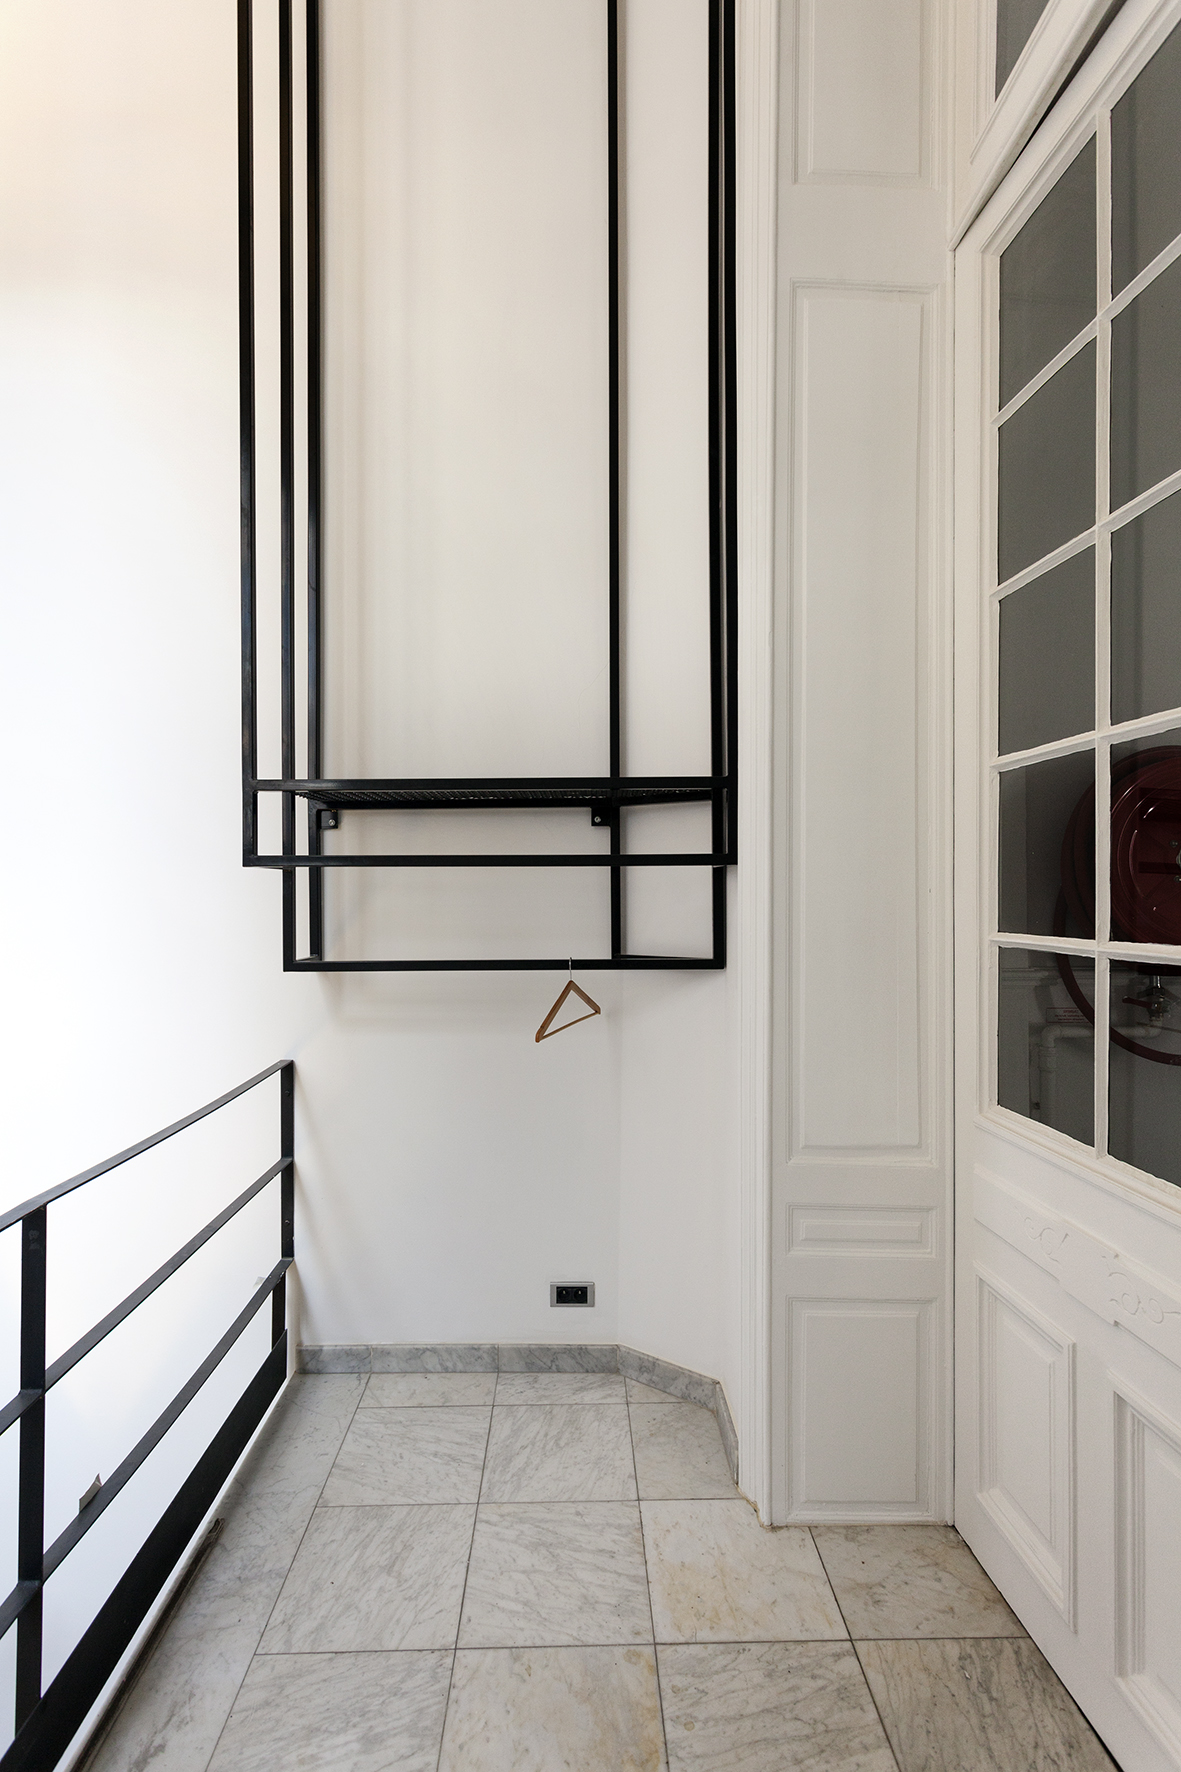 architecture-contemporaine-maison-laicite-charleroi-salle-des-essarts-reservoir-a-salle-polyvalente-vue-détail-vestiaire-cage-escalier